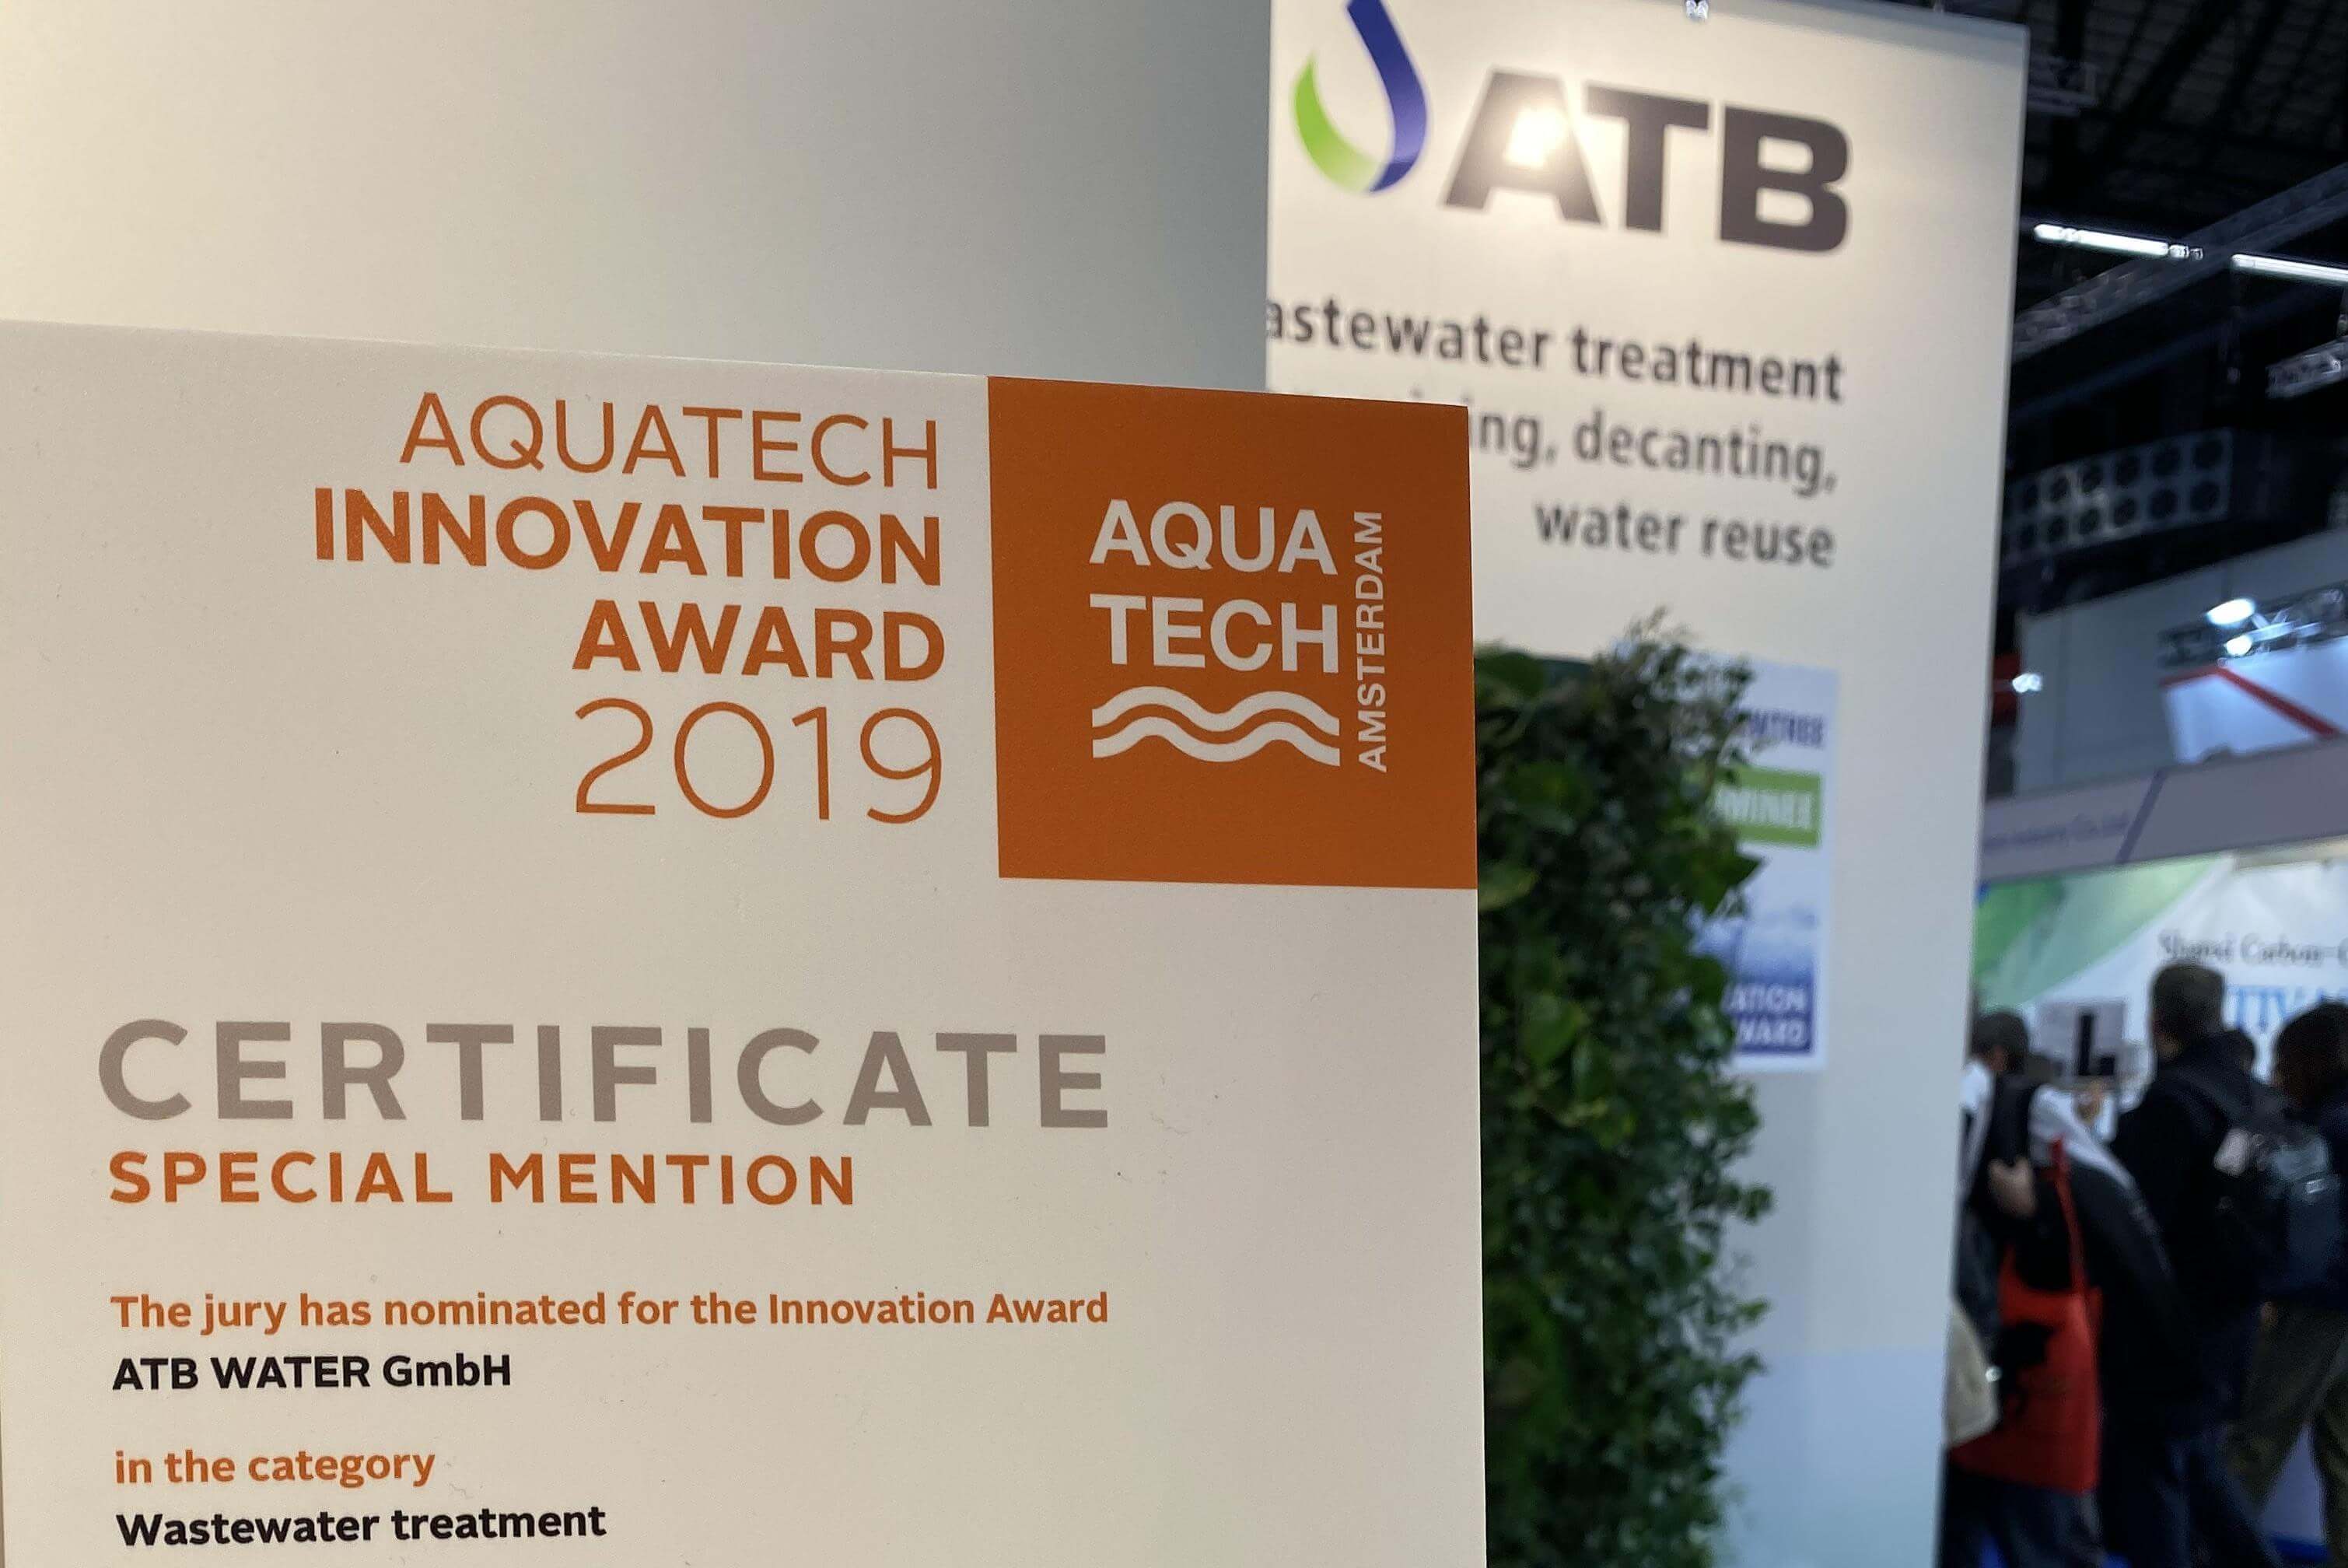 Zertifikat der Aquatech-Preisverleihung